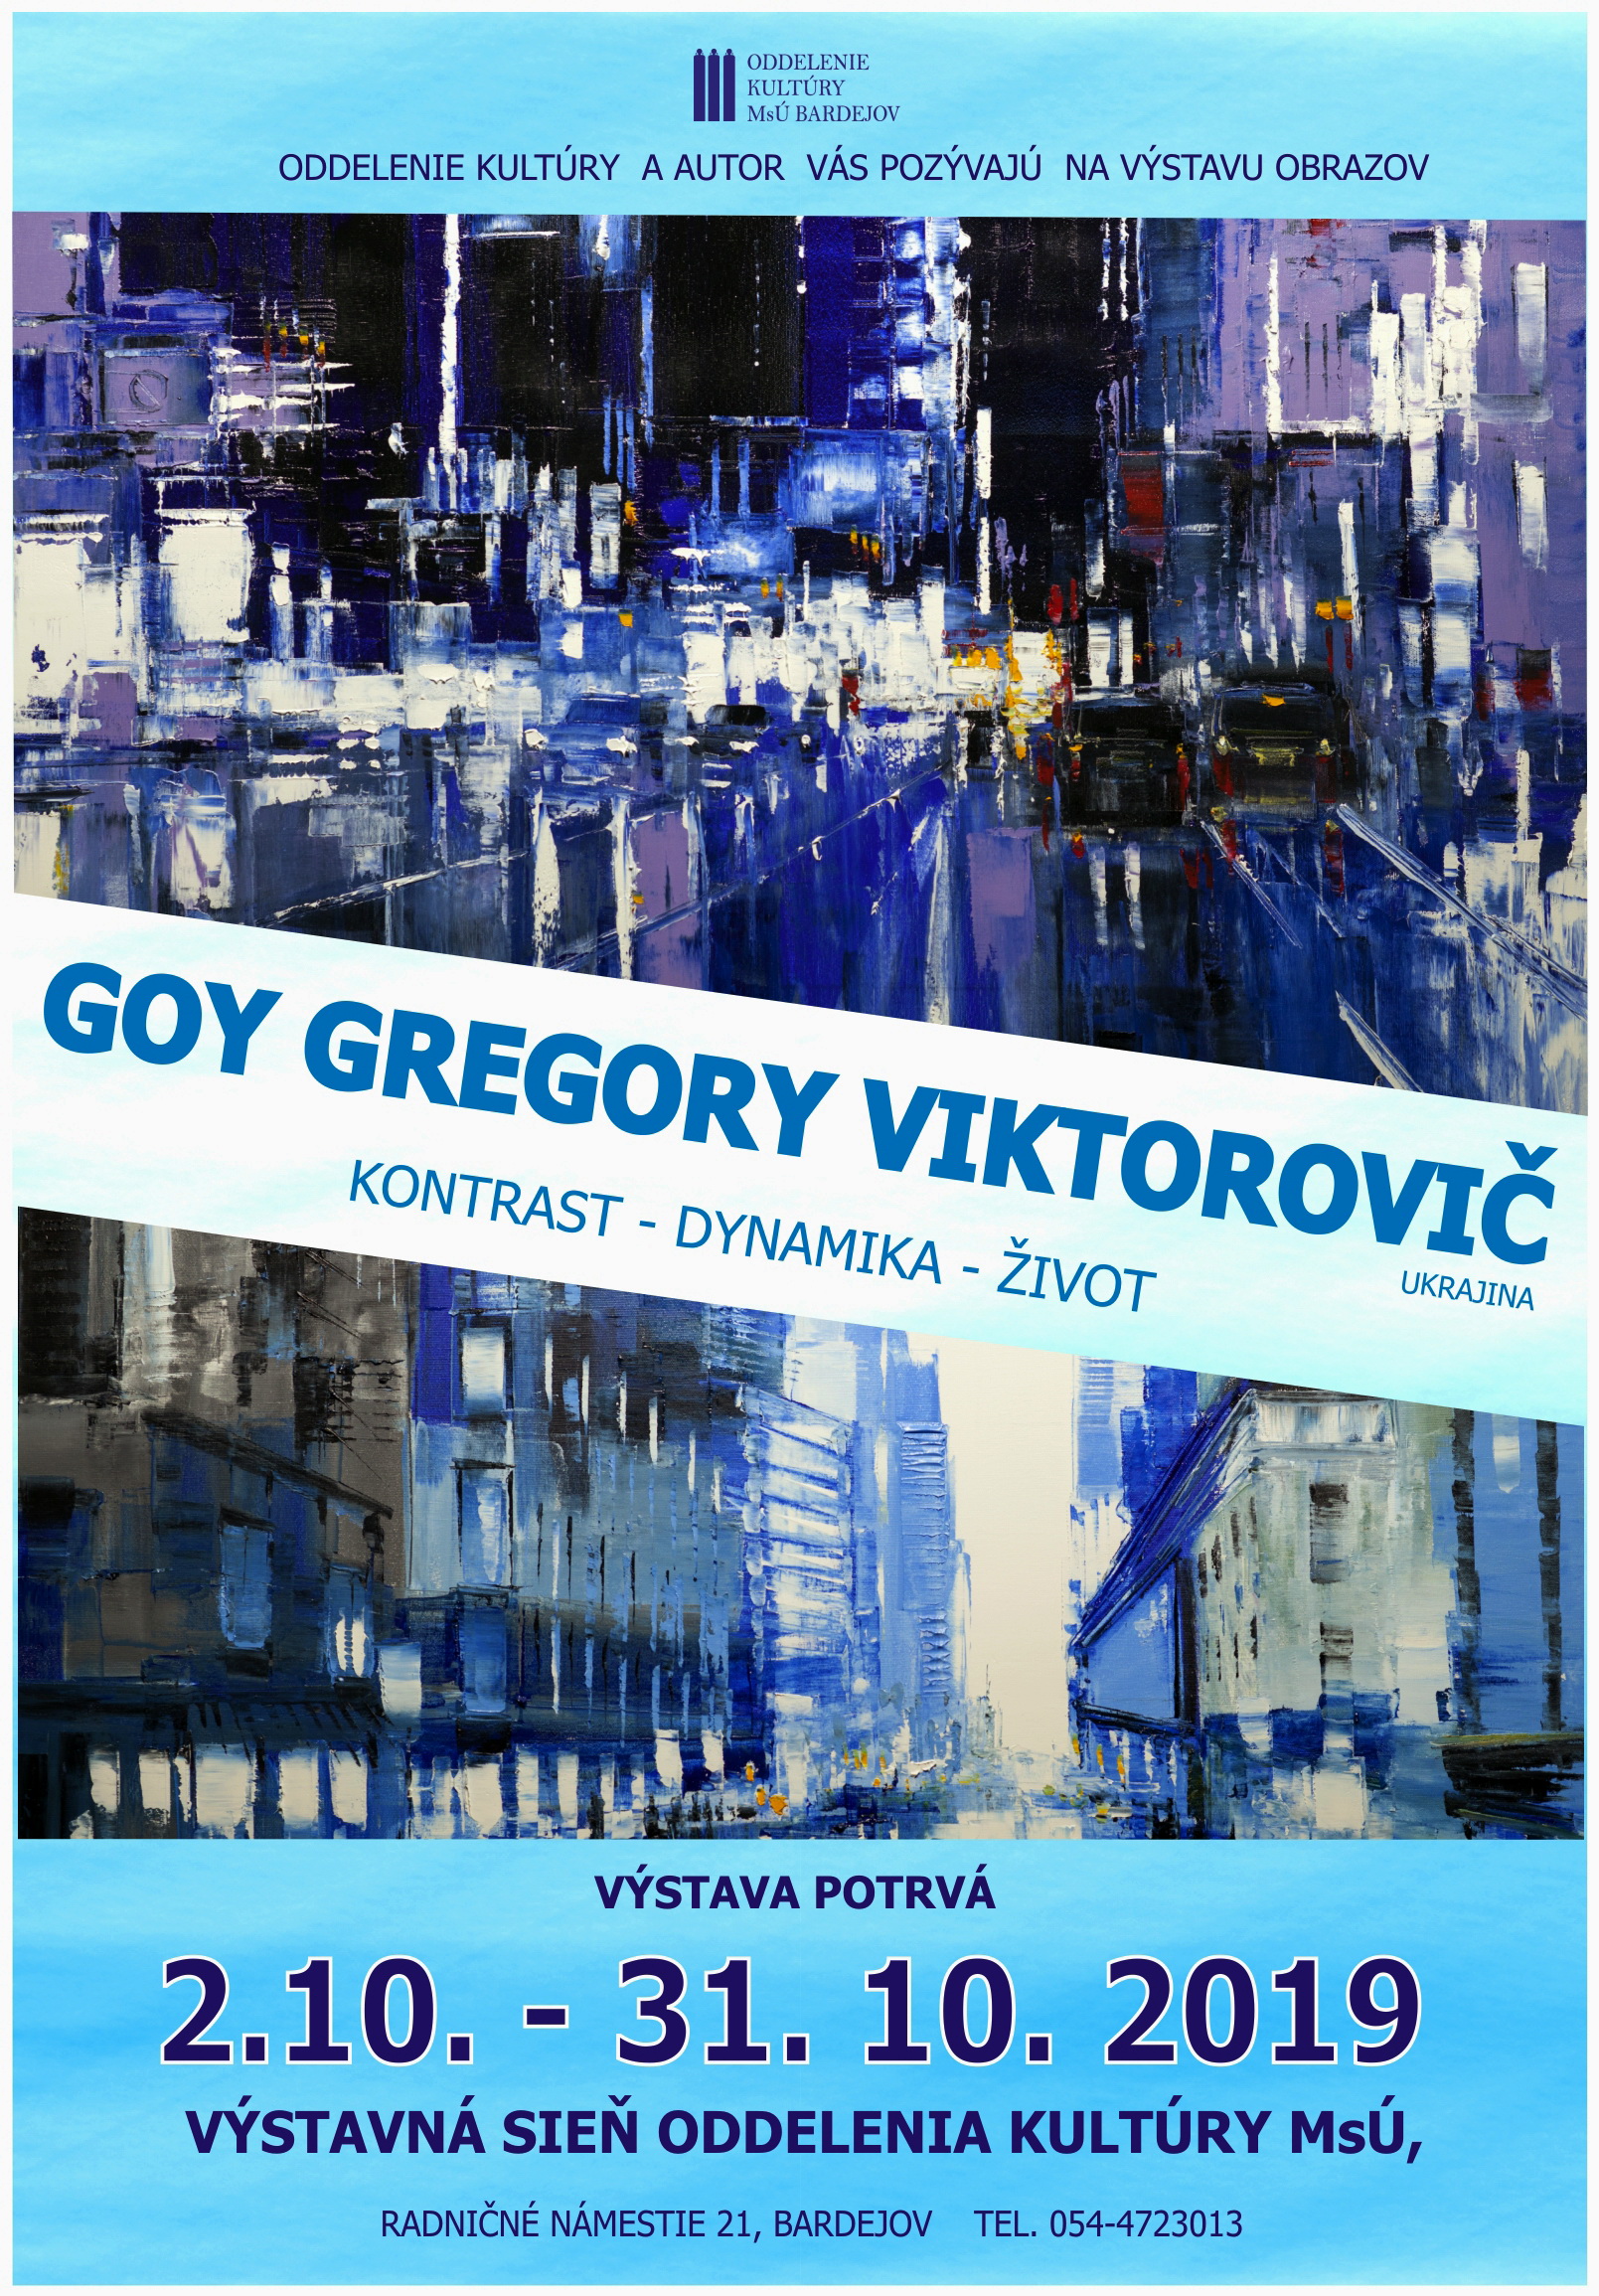 Gregorij goy poster